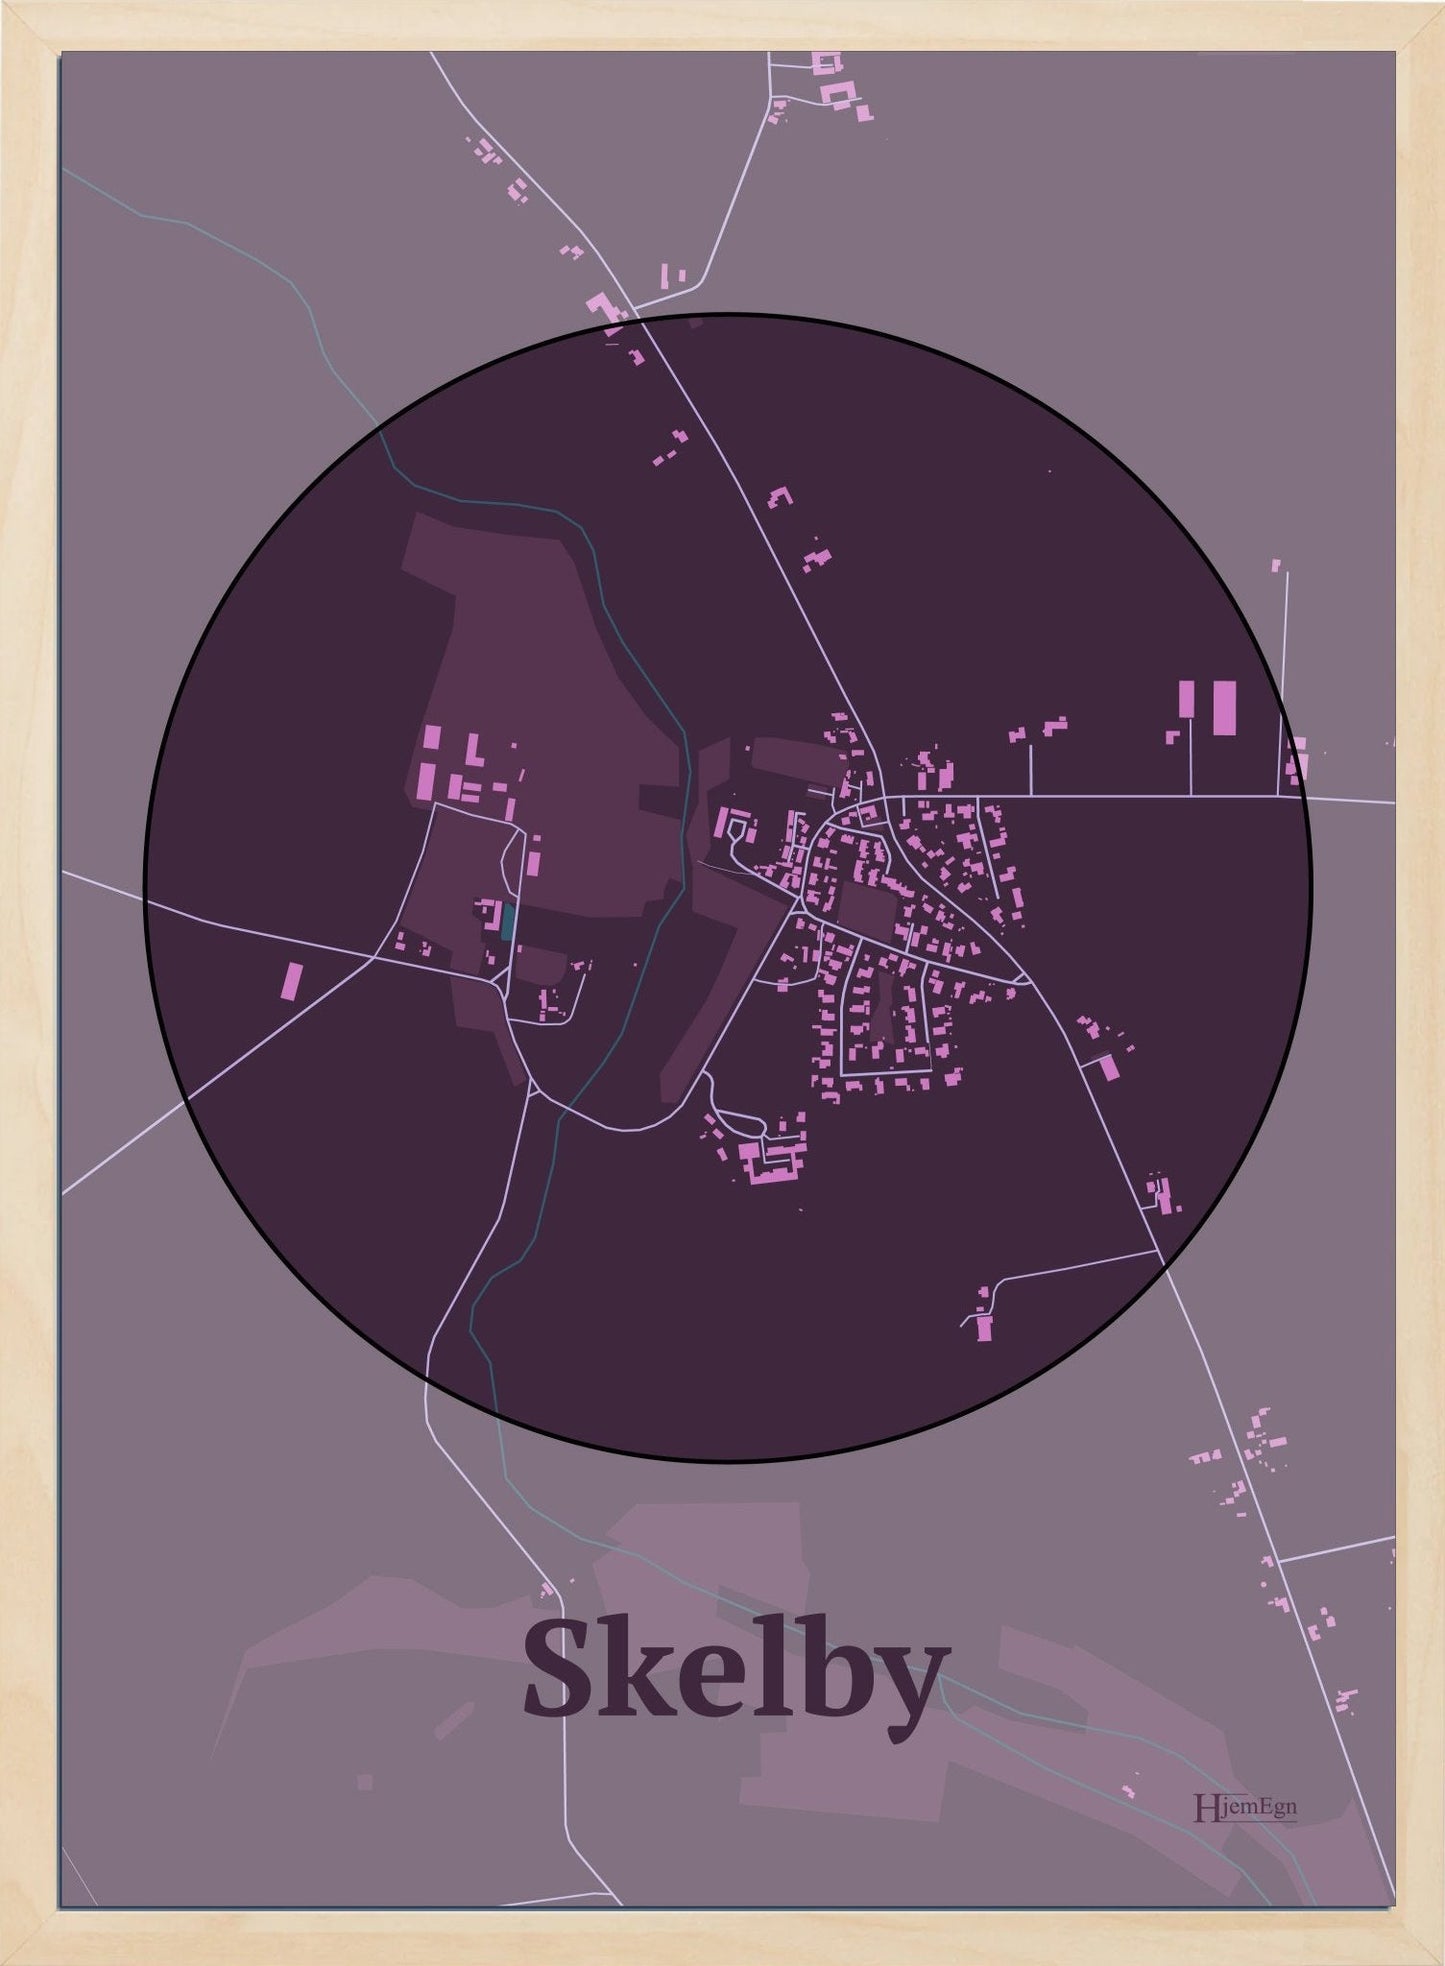 Skelby plakat i farve mørk rød og HjemEgn.dk design centrum. Design bykort for Skelby